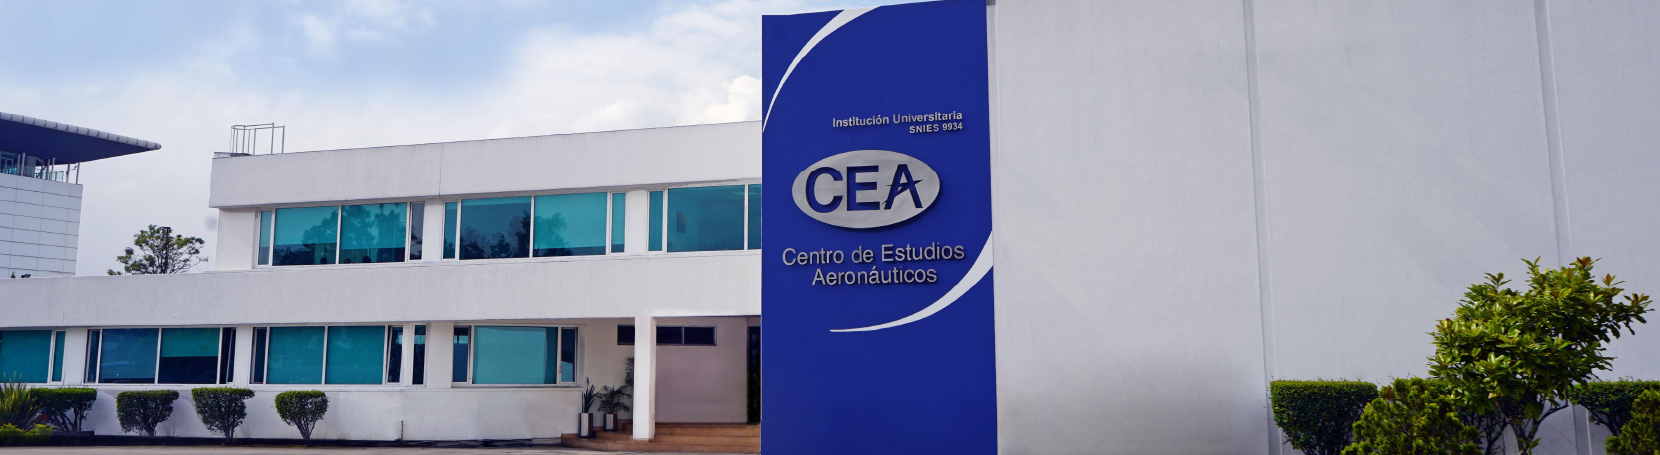 Centro de Estudios Aeronáuticos